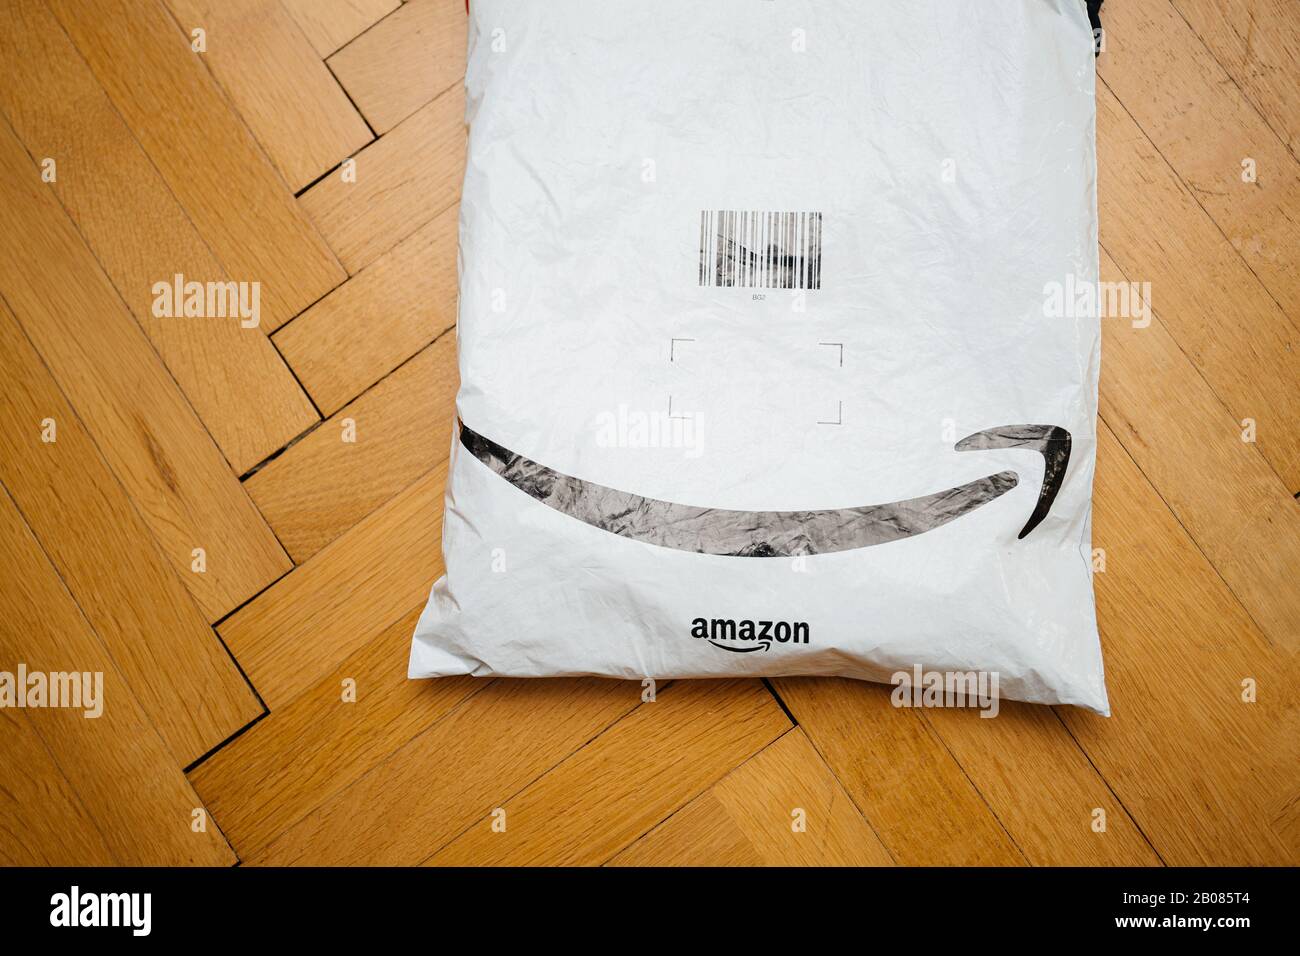 Parigi, Francia - 31 luglio 2019: Lanciato sul pavimento di parquet il  nuovo pacco ricevuto da Amazon prime con il logo della freccia sorriso Foto  stock - Alamy